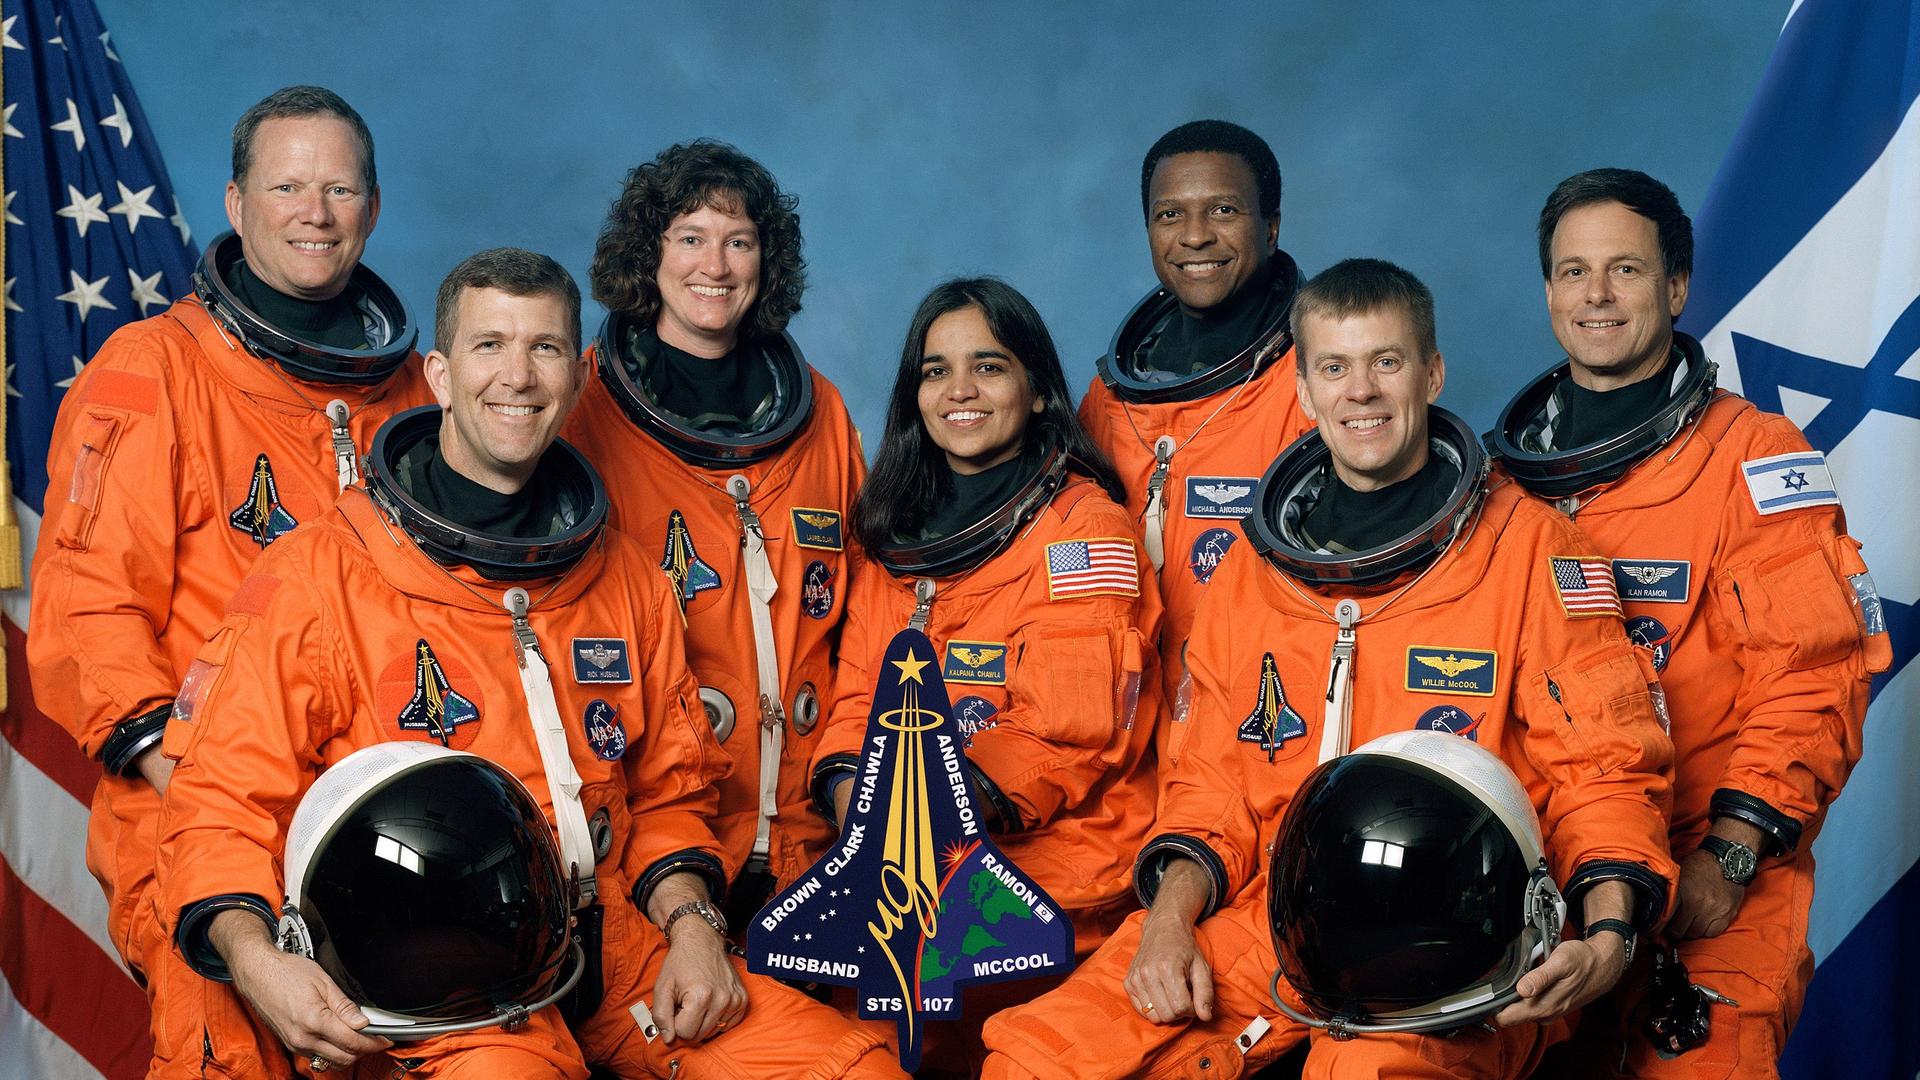 Unglück eines Space Shuttle vor 20 Jahren - Die Columbia, tödliche Hitze und ein letztes Video